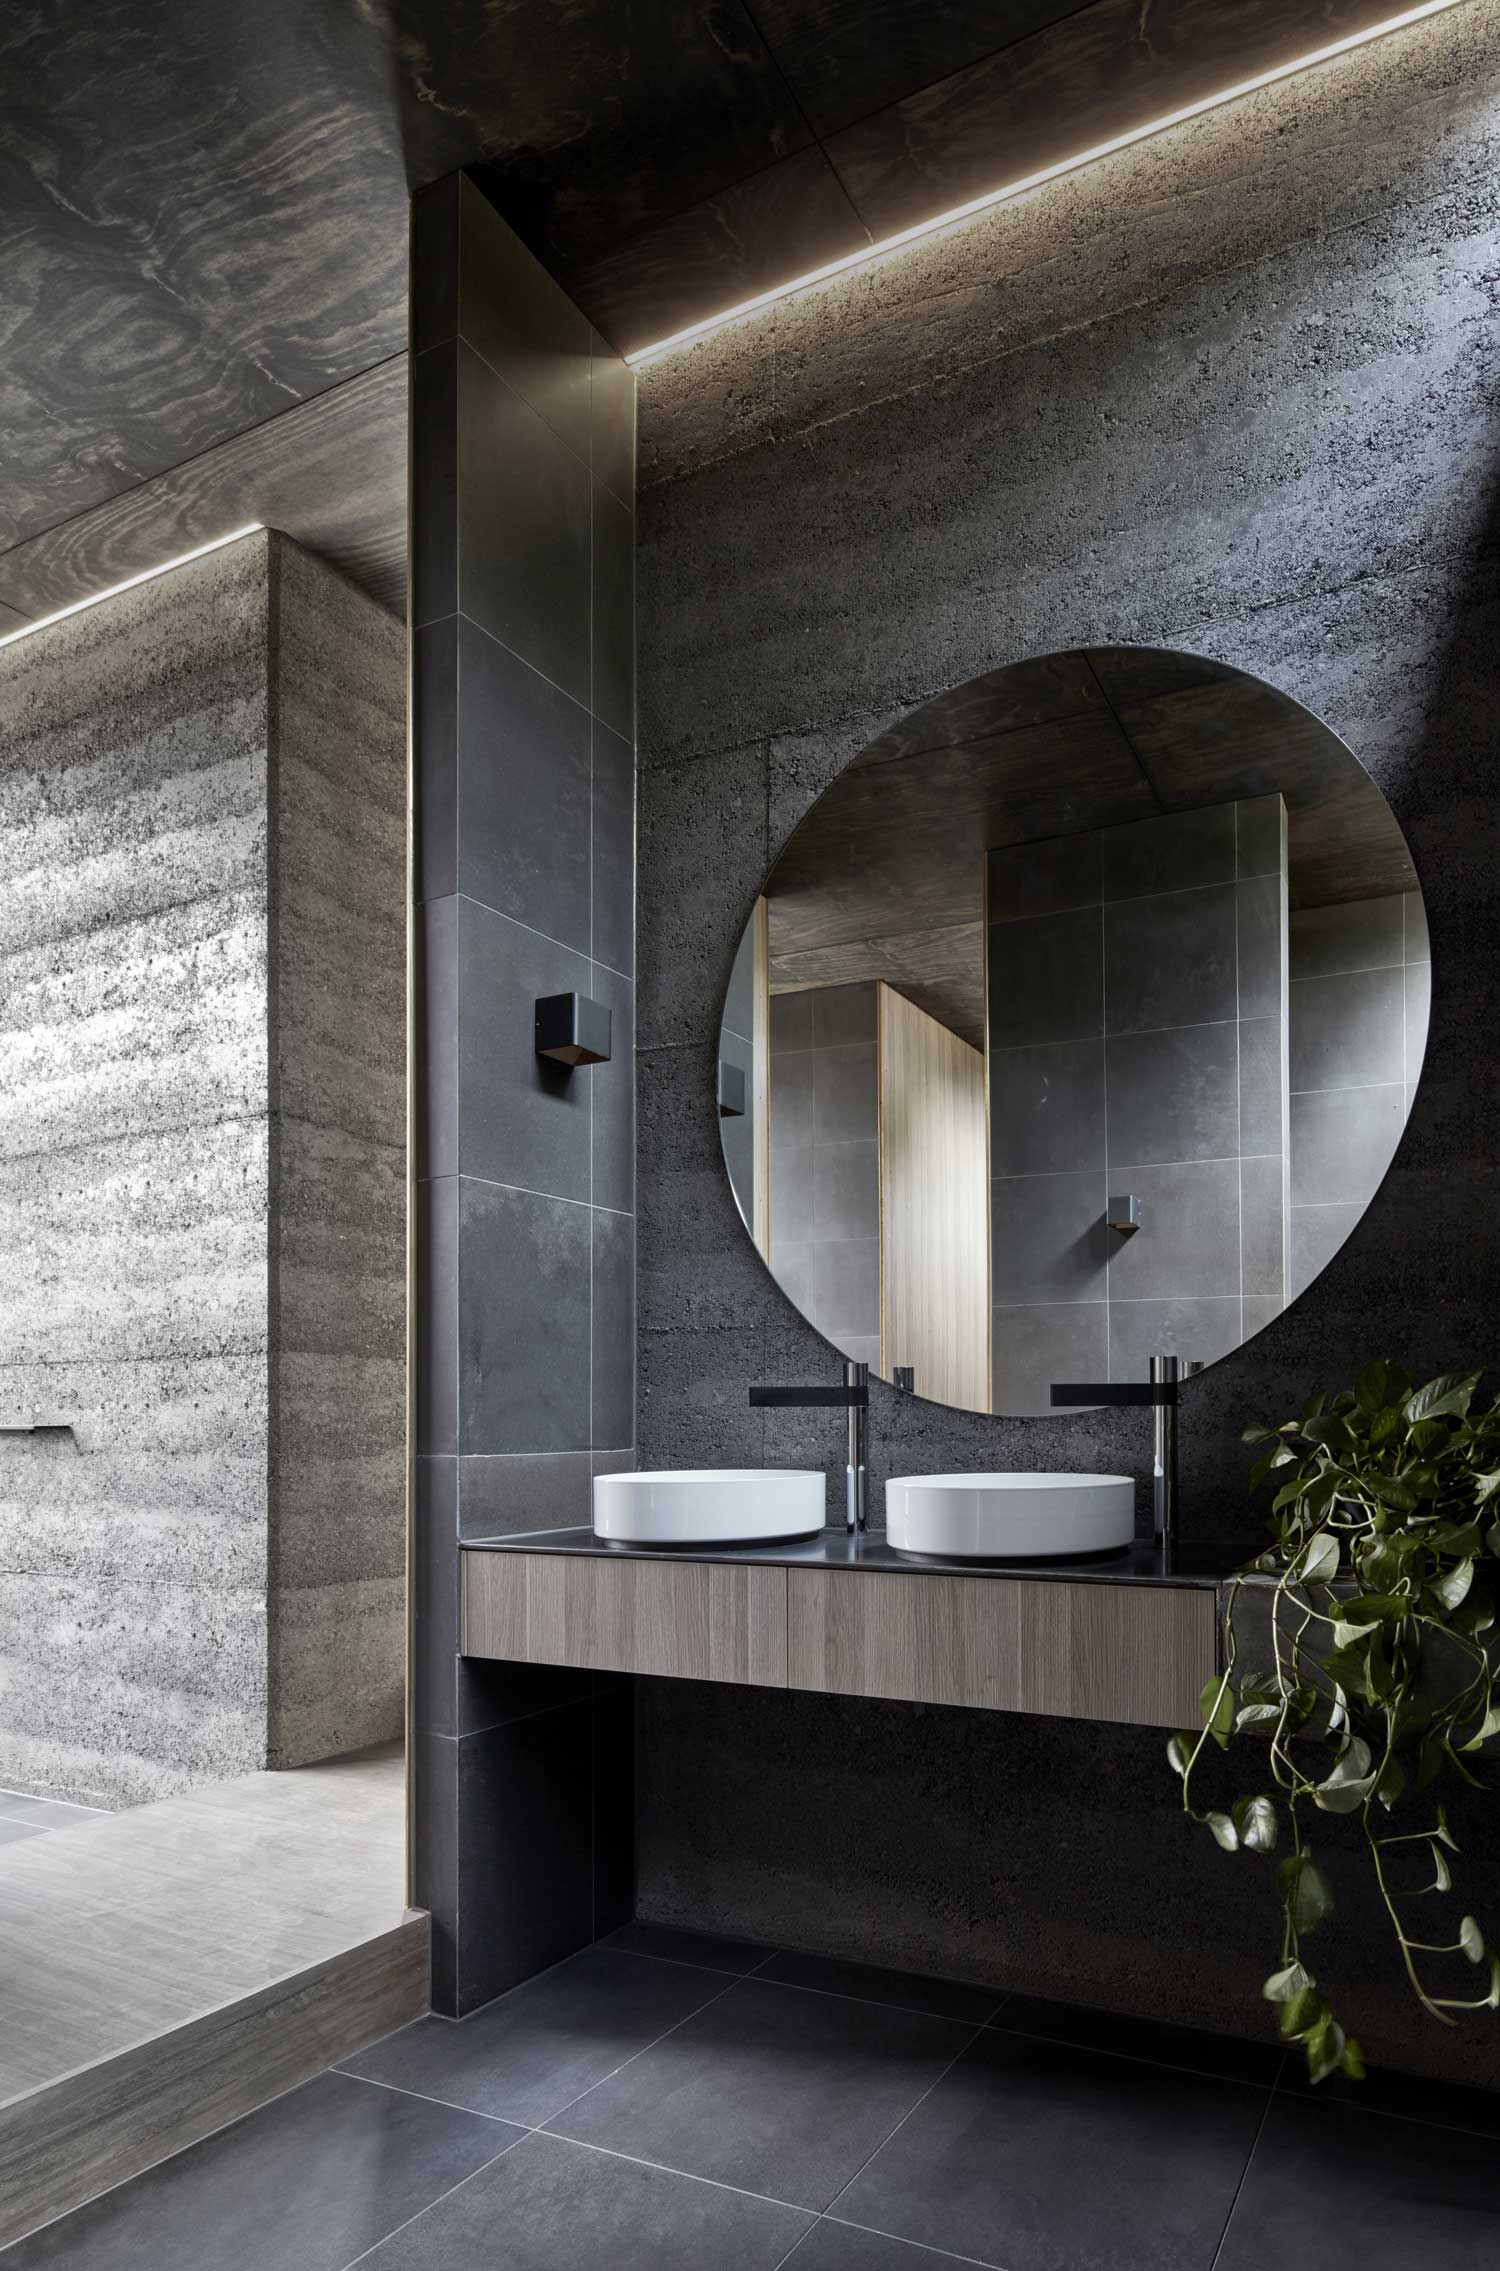 Deze moderne badkamer heeft een buitendouche gekregen!